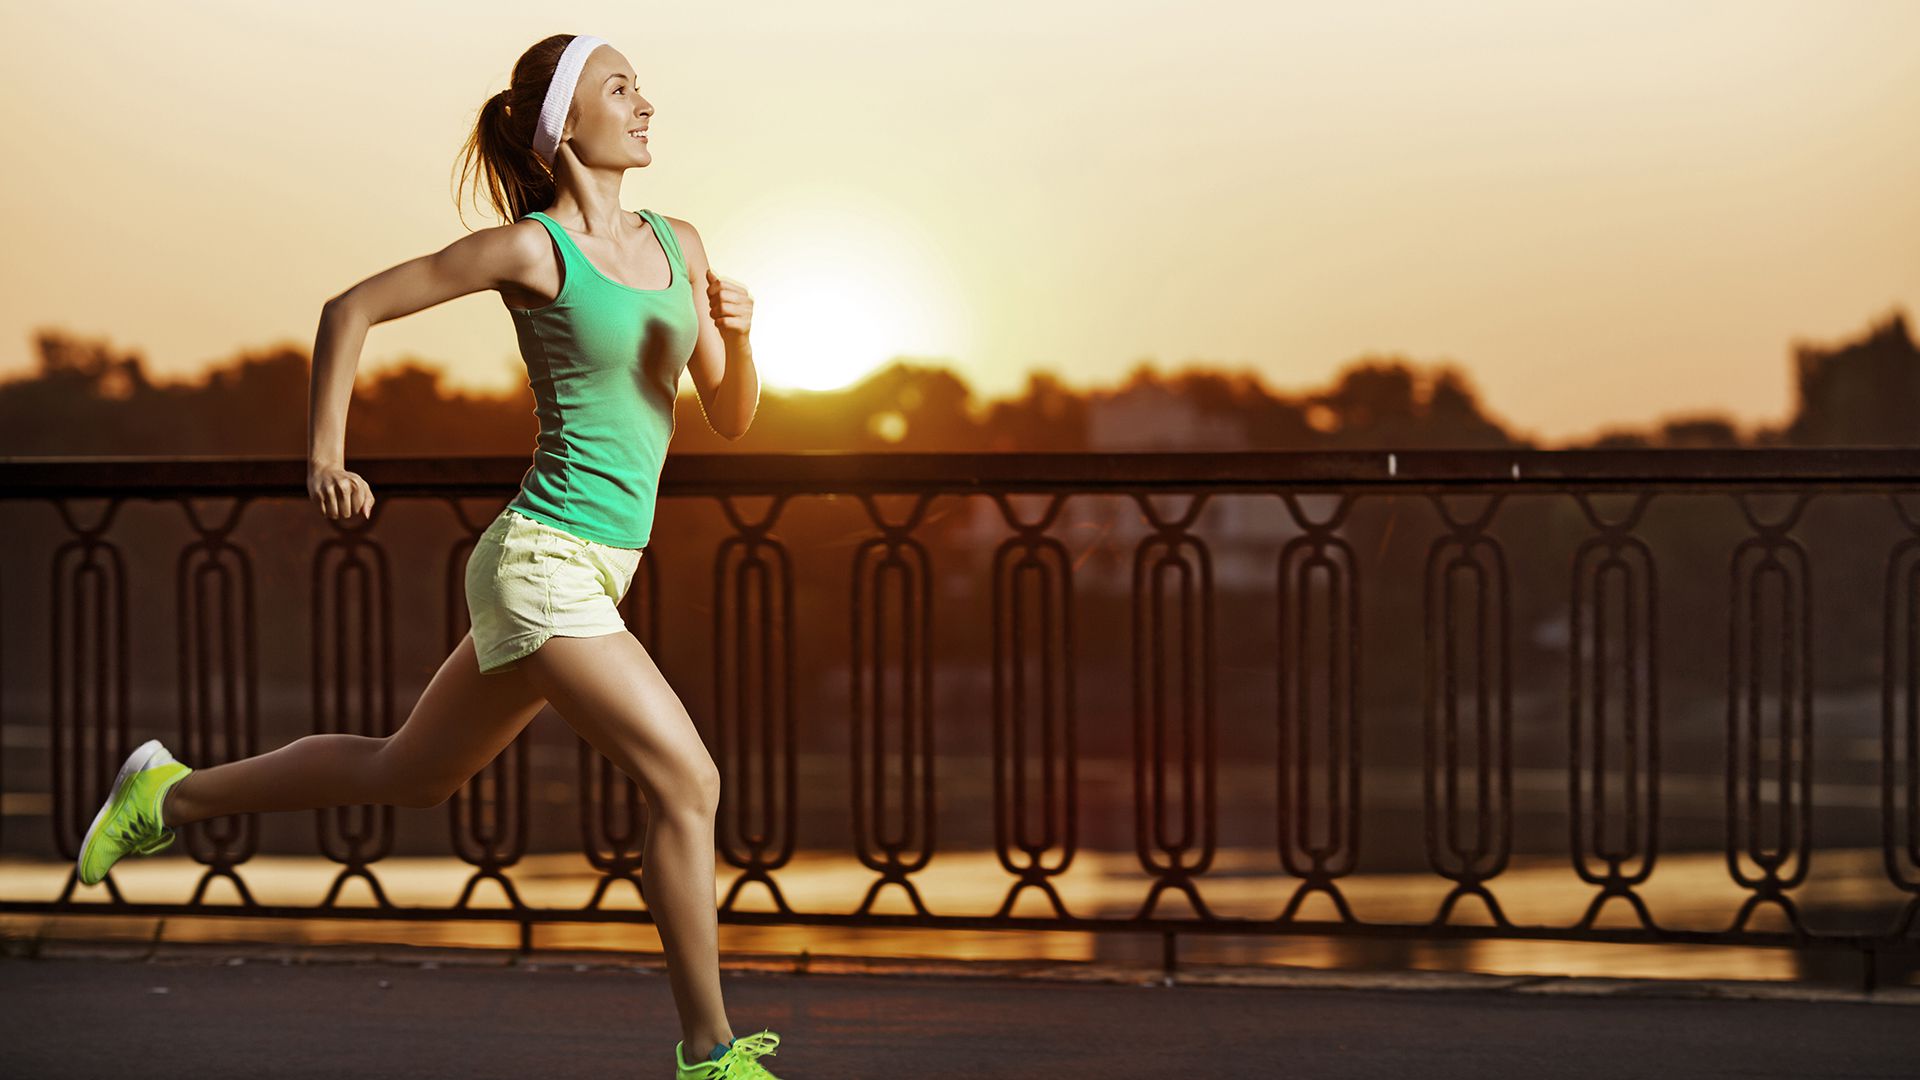 Ocho de cada 10 millonarios hace actividad física todos los días, en particular ejercicio aeróbico. (Shutterstock)